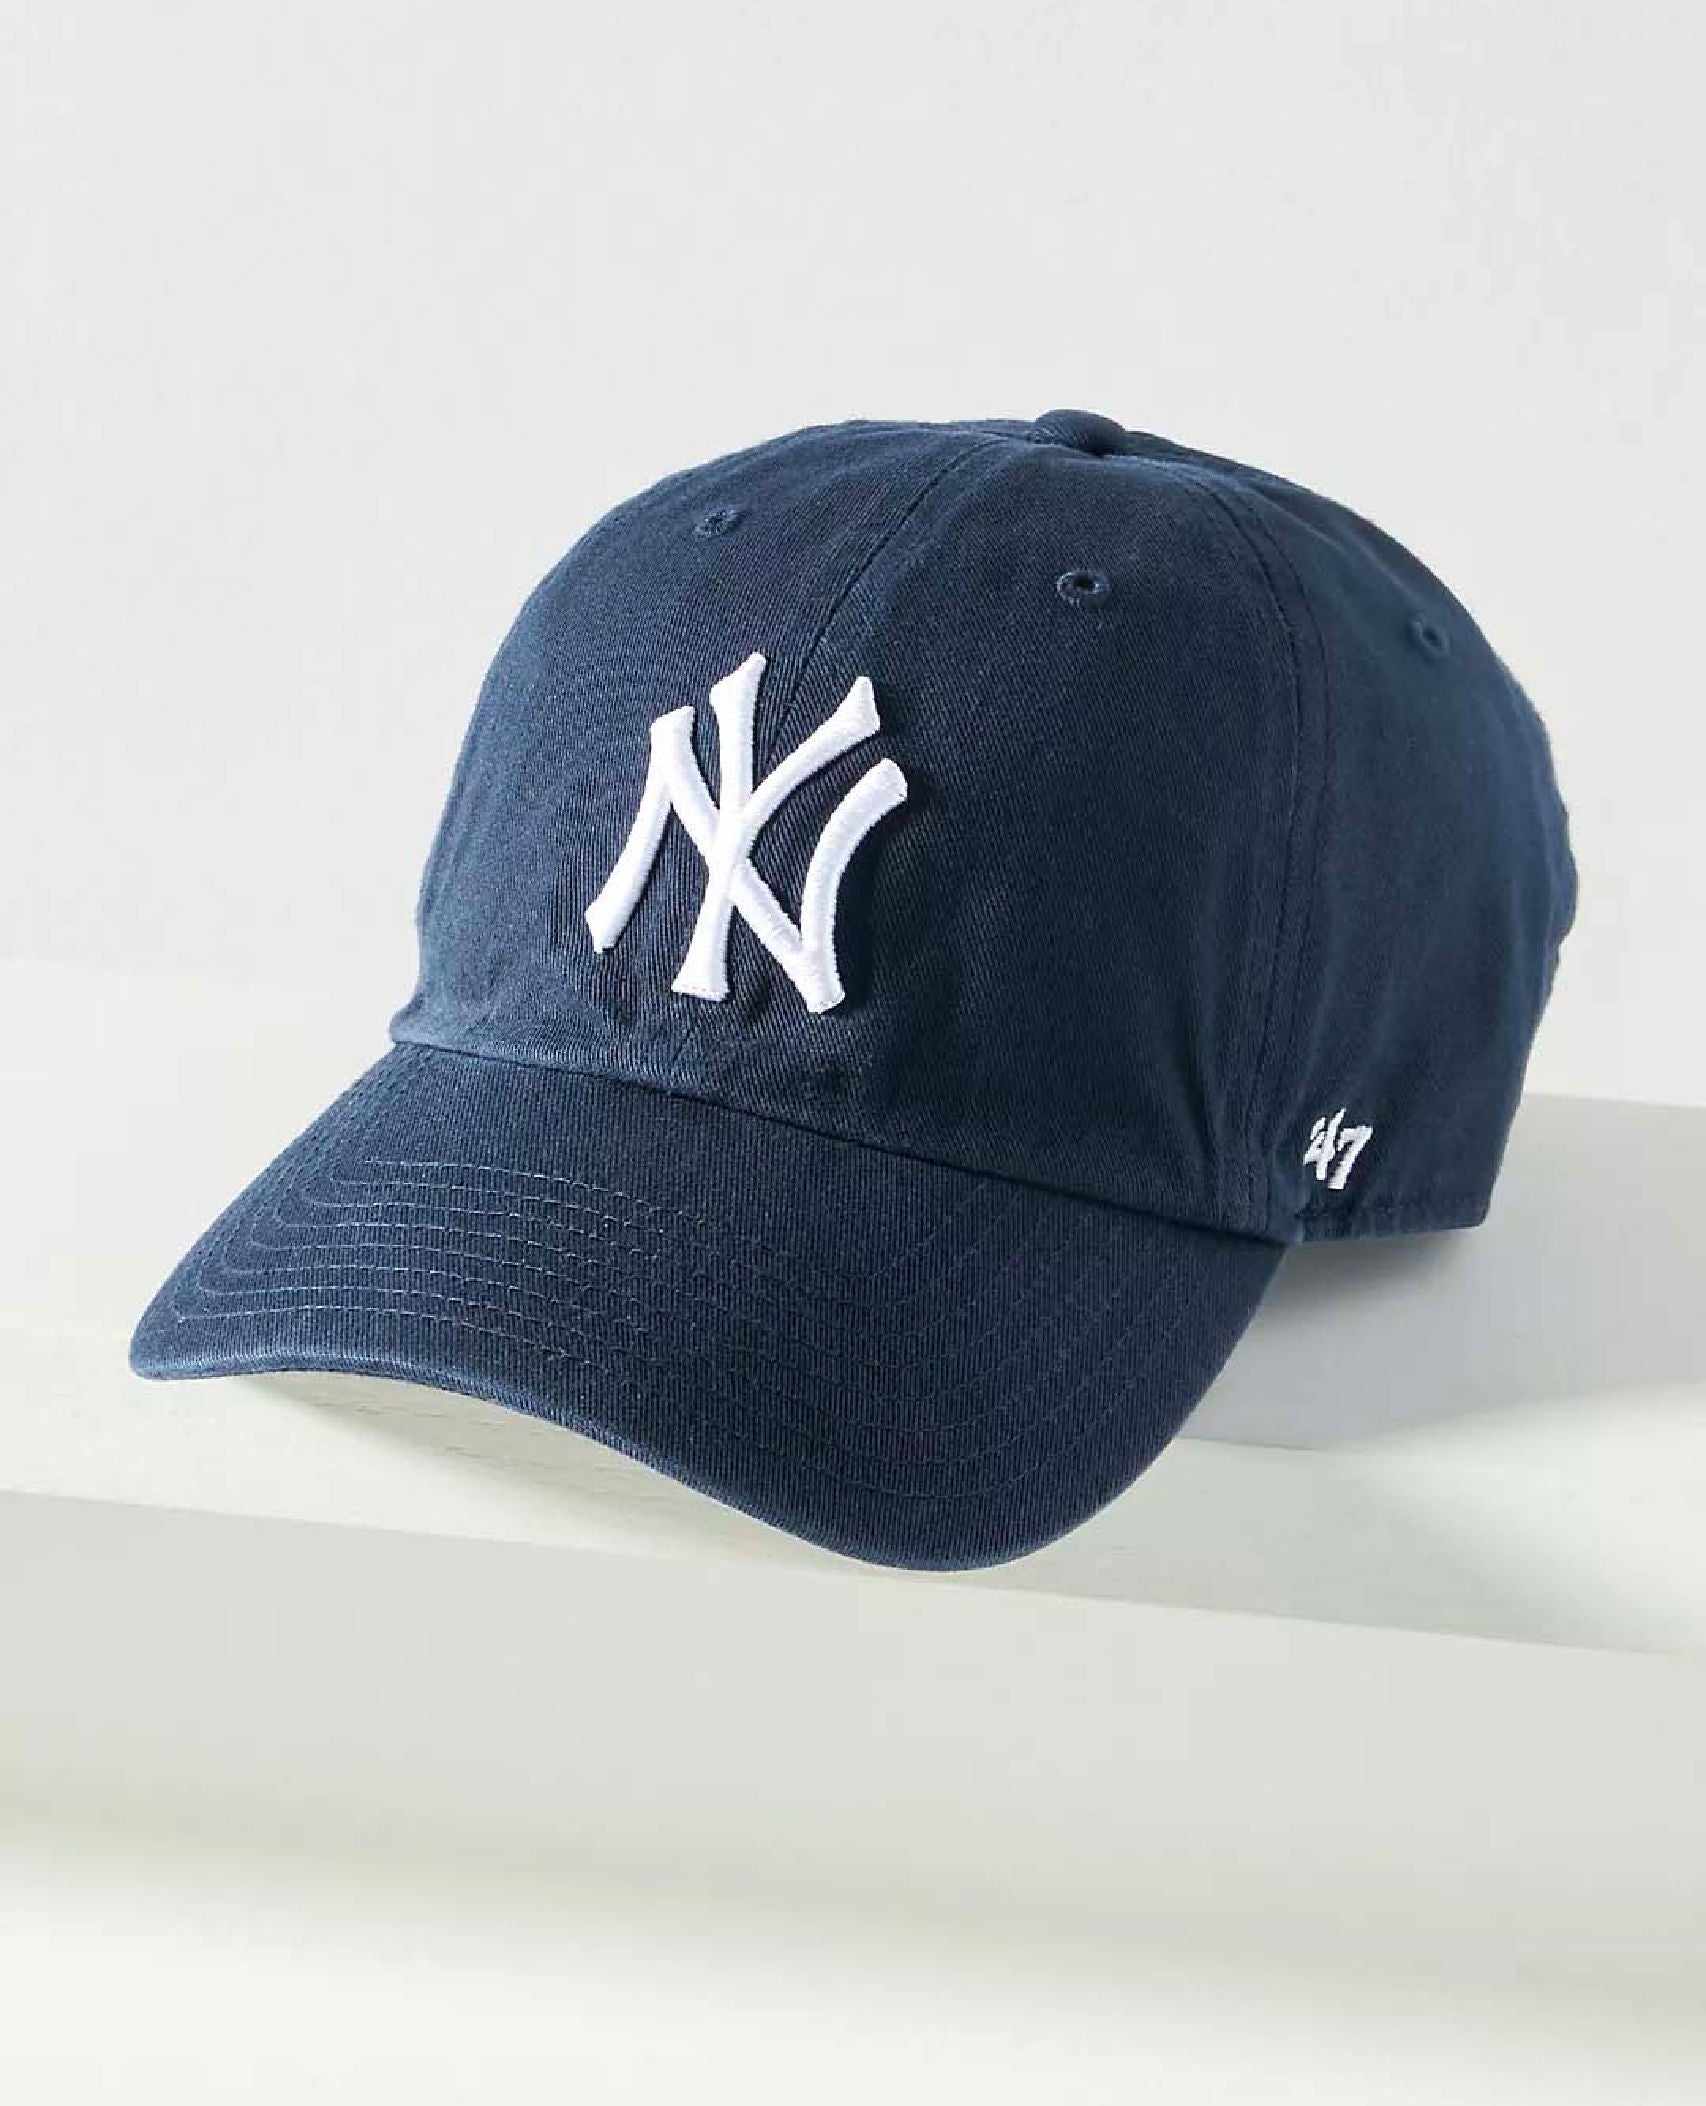 NY Baseball Hat Navy